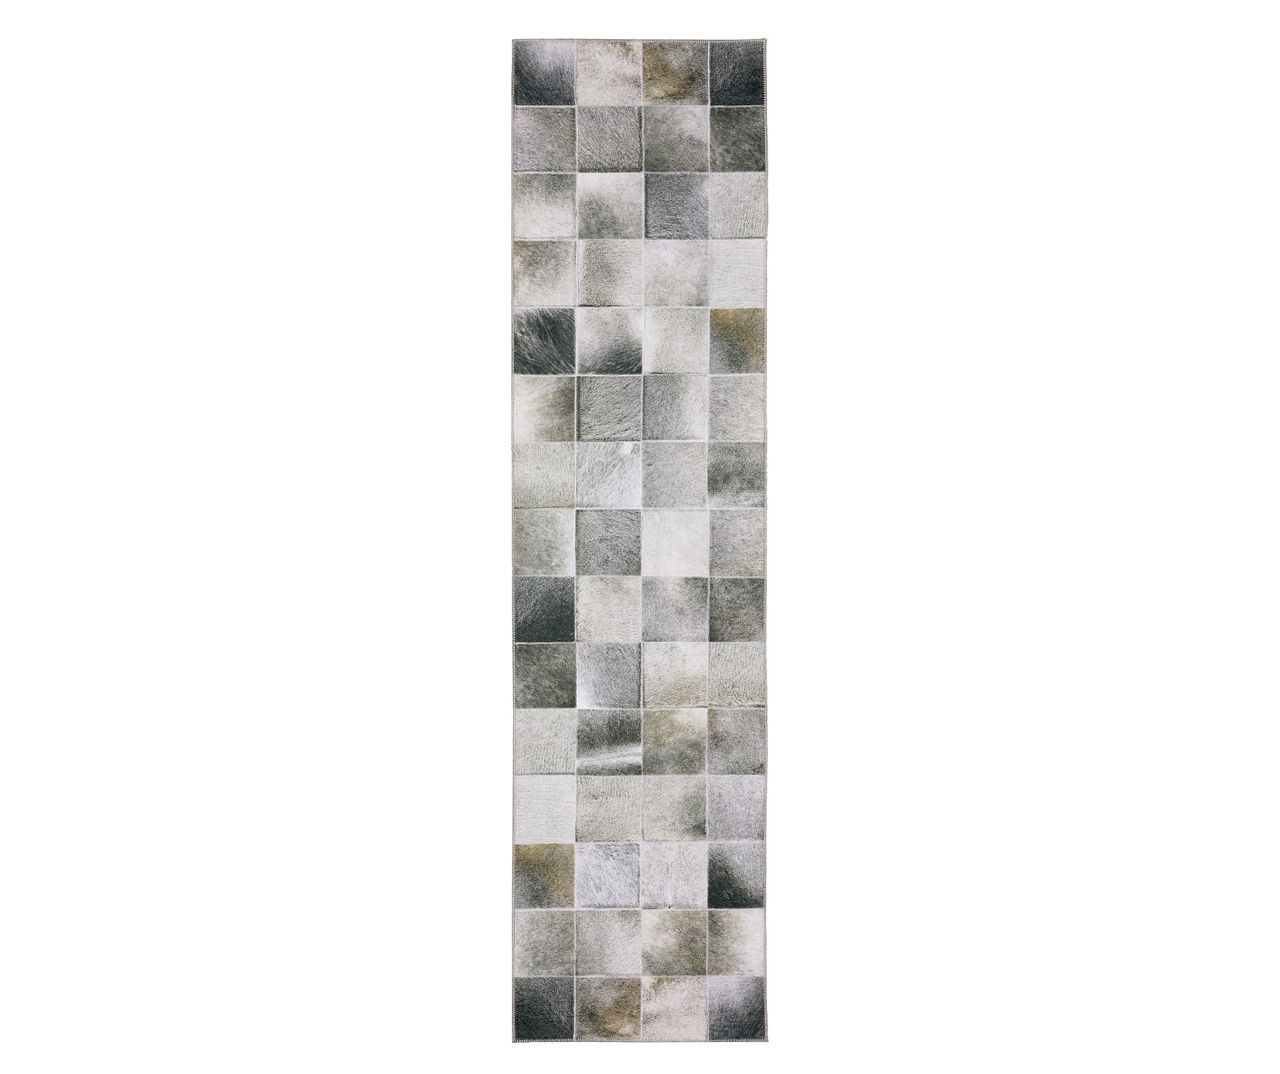 Mylan Gray & Blue Faux Hide Tile Pattern Area Rug, (8.9' x 12')